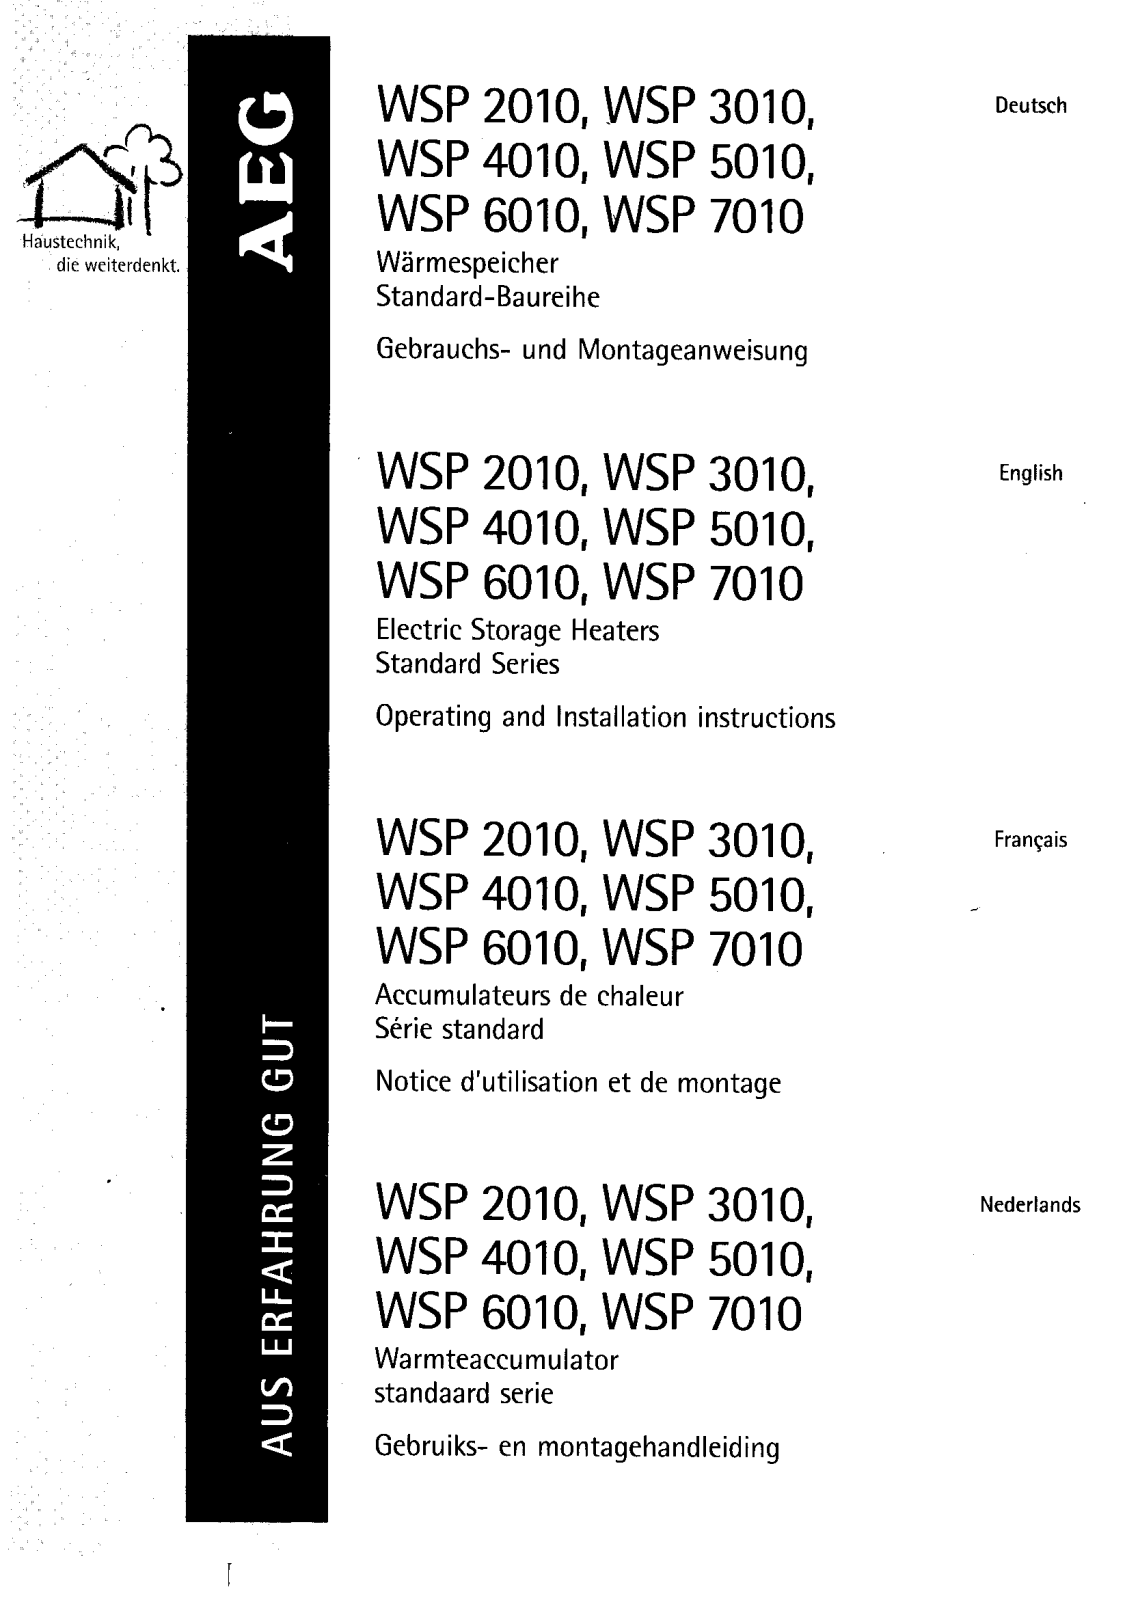 AEG WSP2410F, WSP3510N, WSP1210F, WSP1810F, WSP3010F Manual